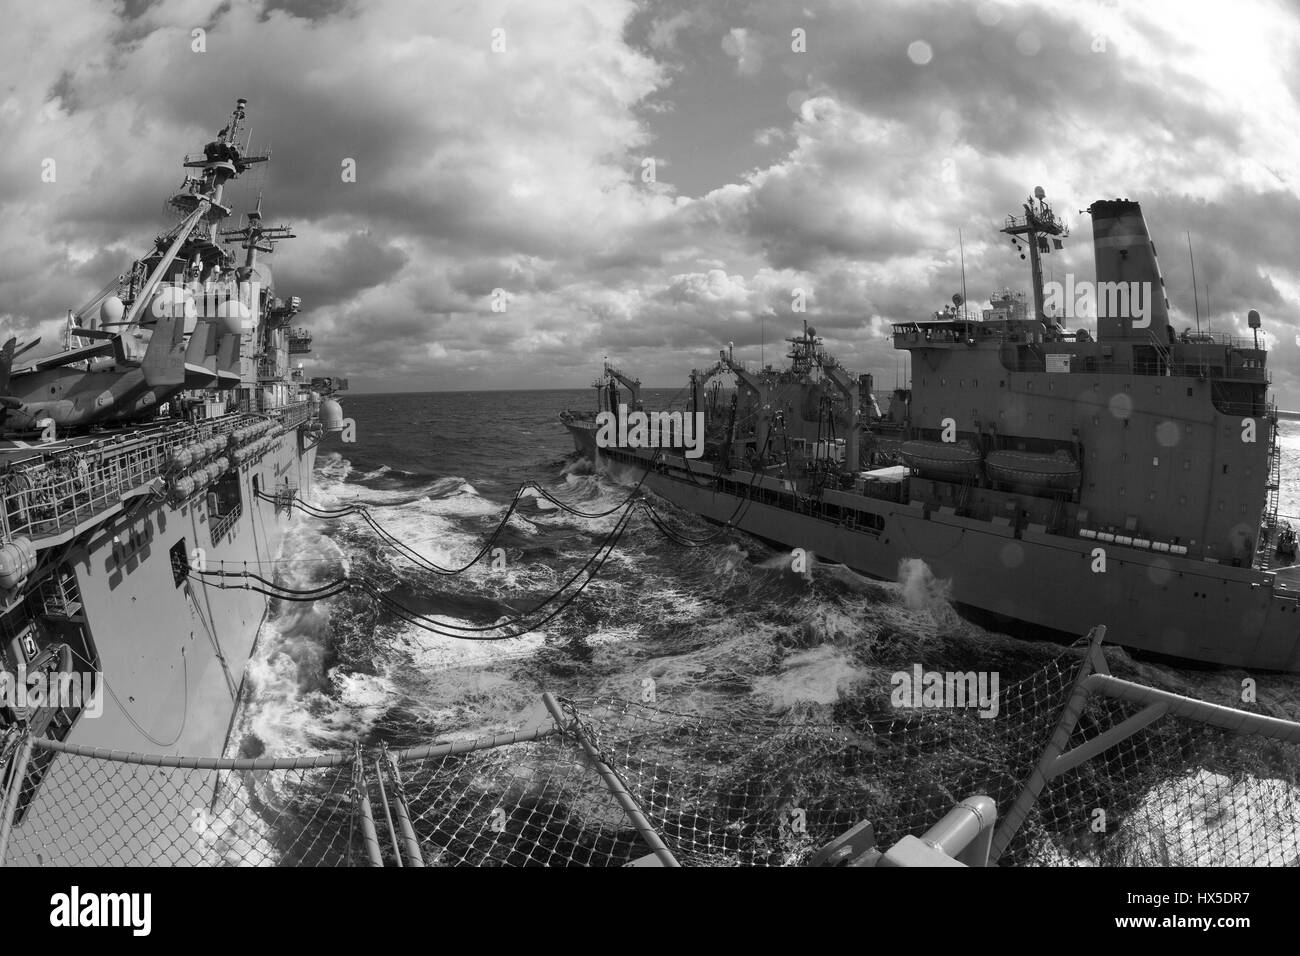 Navire d'assaut amphibie USS Kearsarge LHD (3) Transport maritime et militaire de la flotte commande reconstitution oiler USNS Big Horn (T-AO 198) au cours d'un ravitaillement en mer, océan Atlantique, 2013. Image courtoisie Corbin Shea/US Navy. Banque D'Images